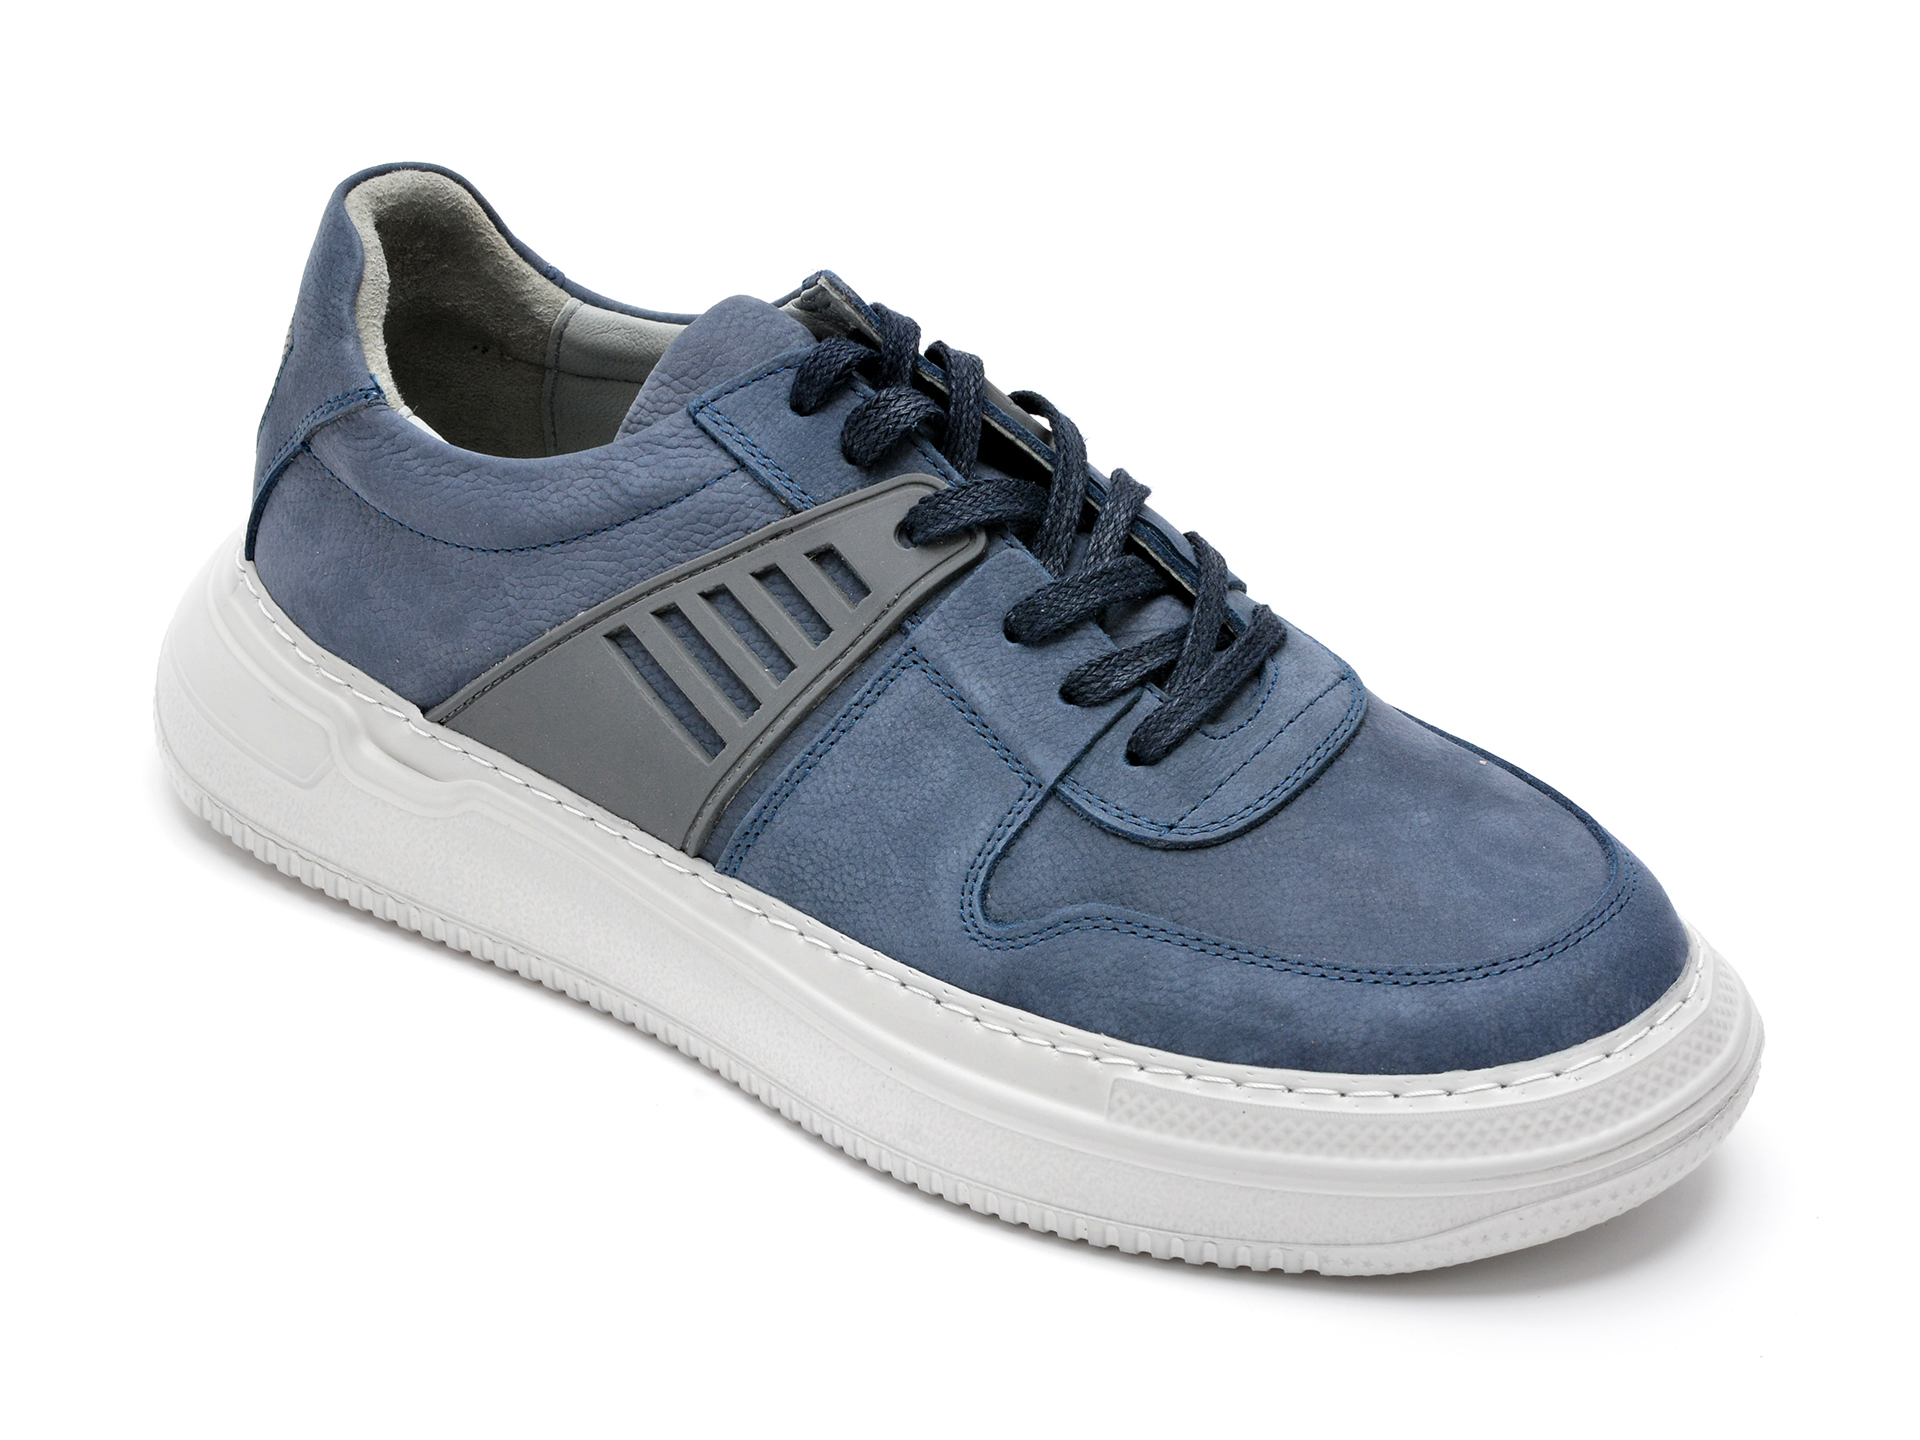 Pantofi OTTER albastri, 13103, din nabuc